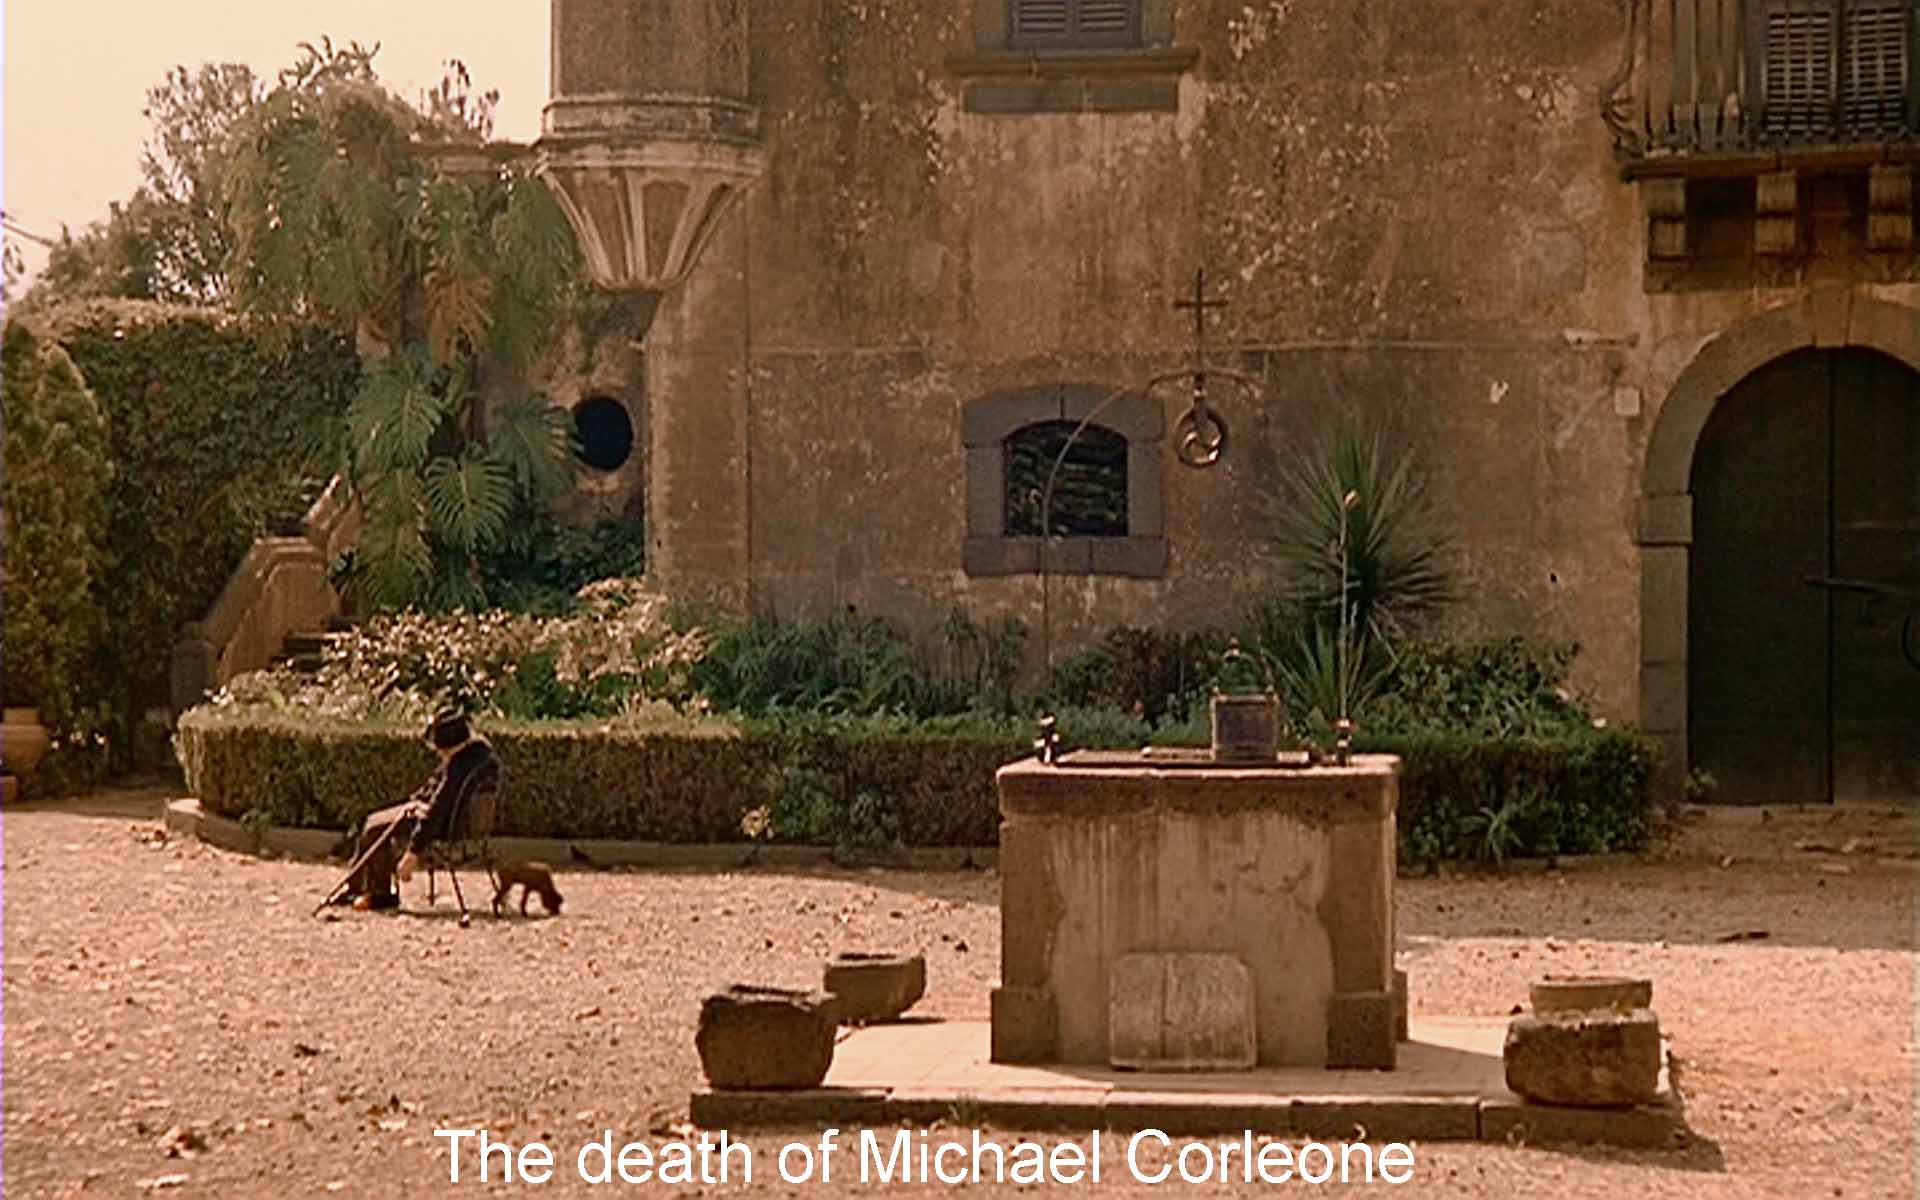 The death of Michael Corleone